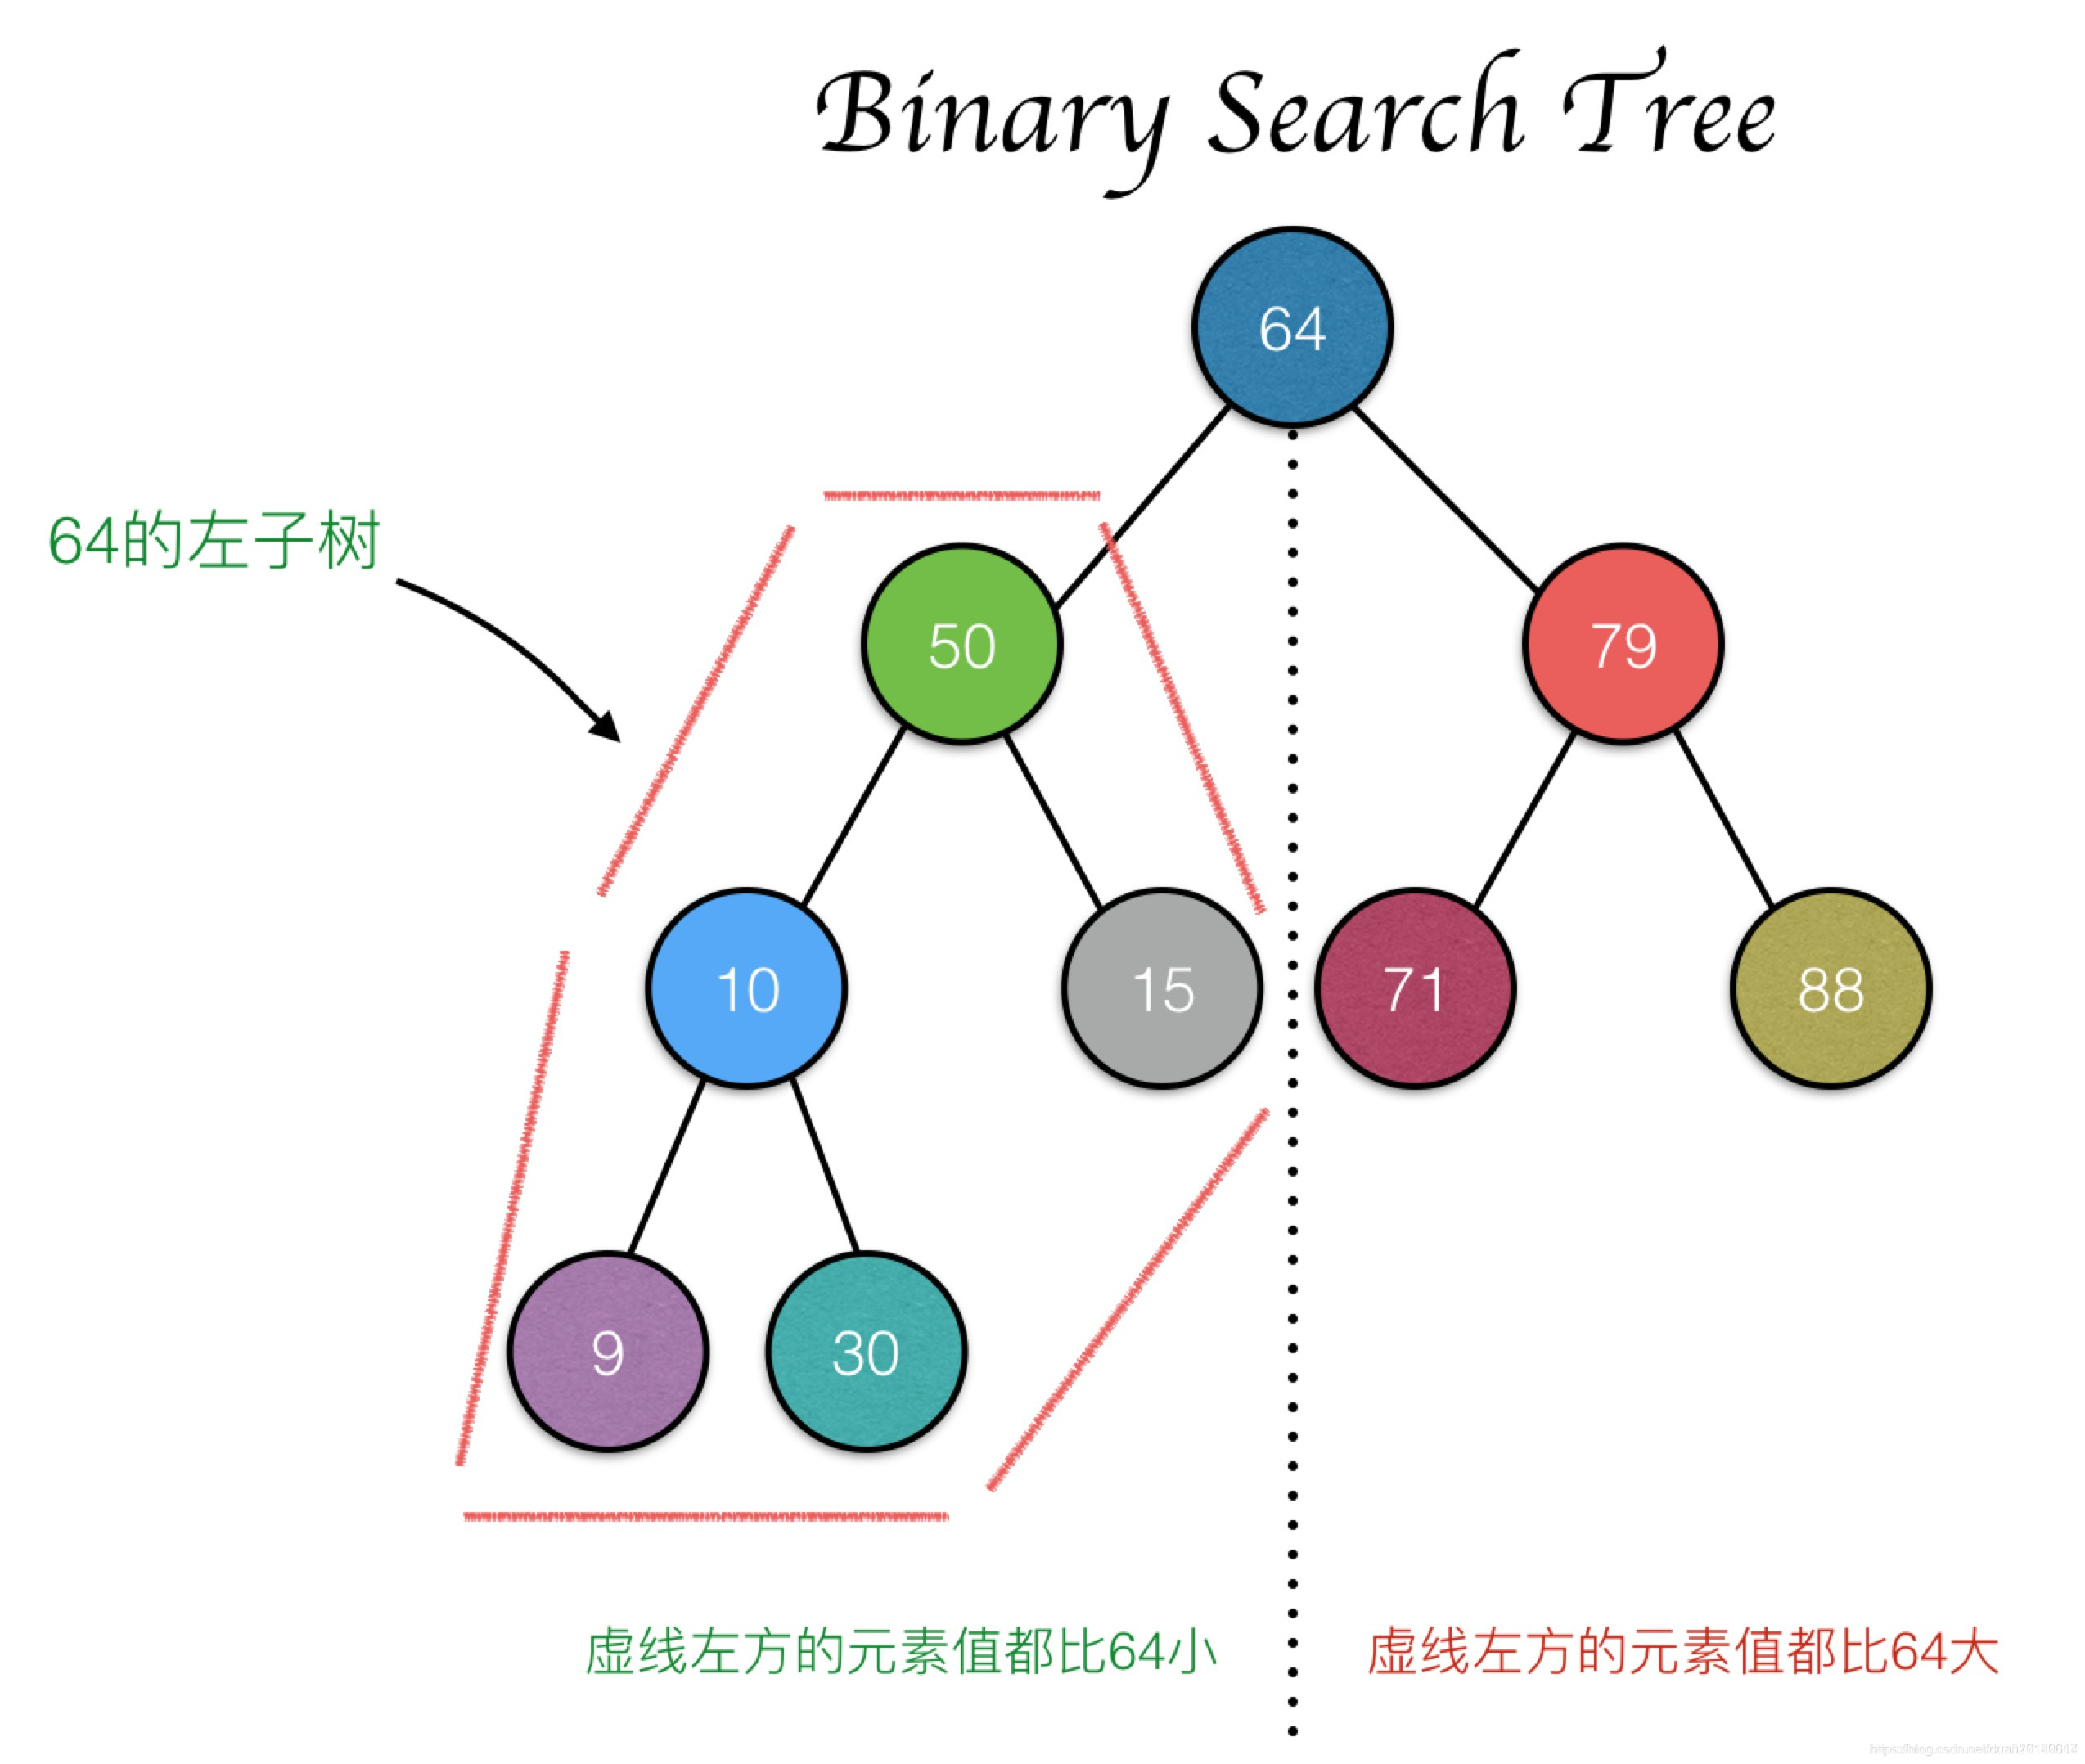 通用算法- [树结构] - 二叉搜索树_树结构搜索算法-CSDN博客